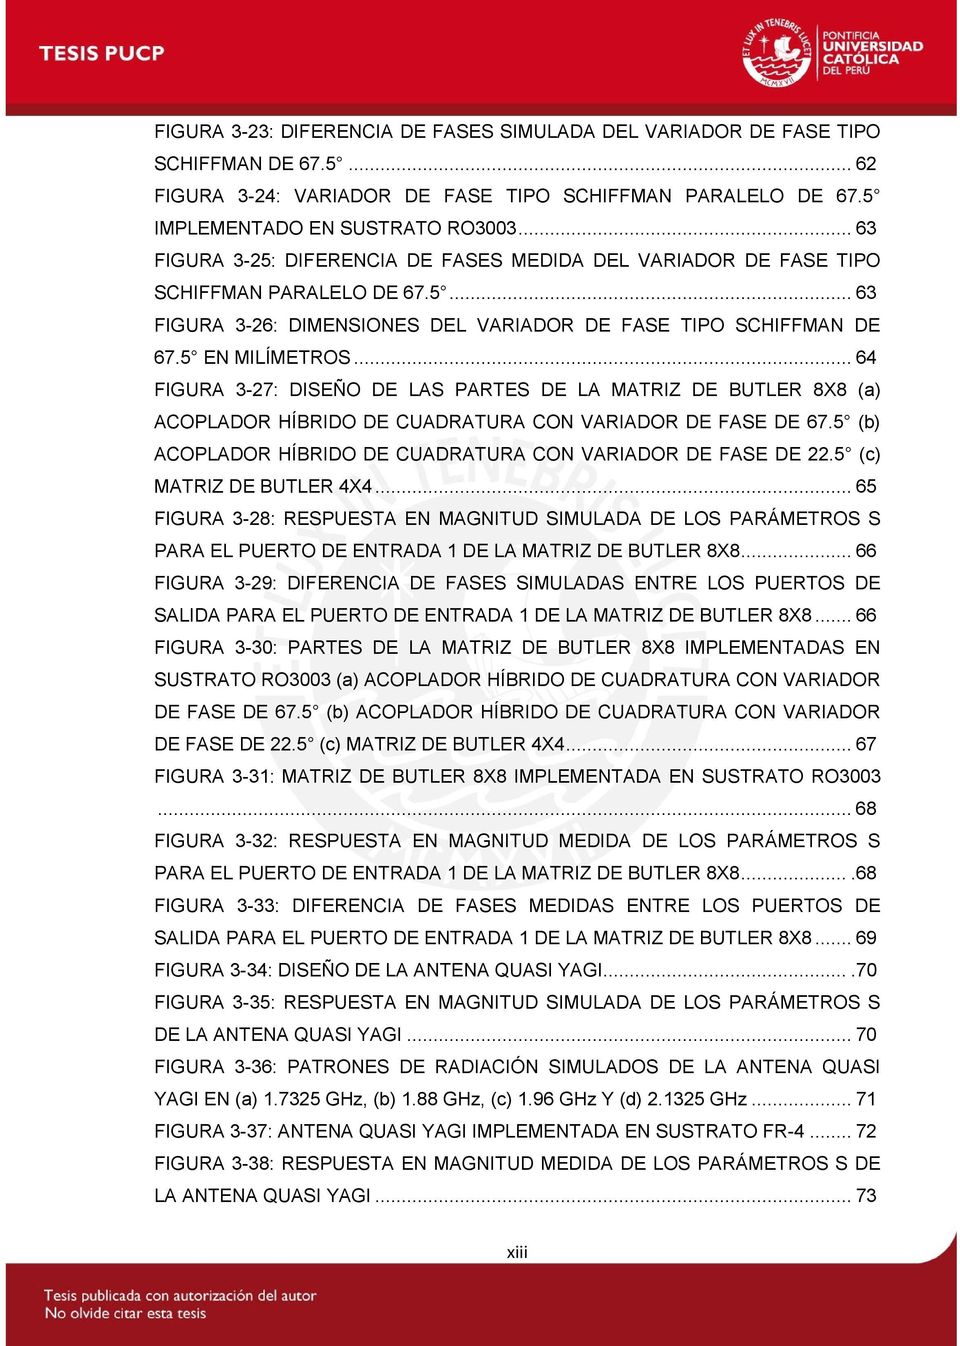 .. 64 FIGURA 3-27: DISEÑO DE LAS PARTES DE LA MATRIZ DE BUTLER 8X8 (a) ACOPLADOR HÍBRIDO DE CUADRATURA CON VARIADOR DE FASE DE 67.5 (b) ACOPLADOR HÍBRIDO DE CUADRATURA CON VARIADOR DE FASE DE 22.